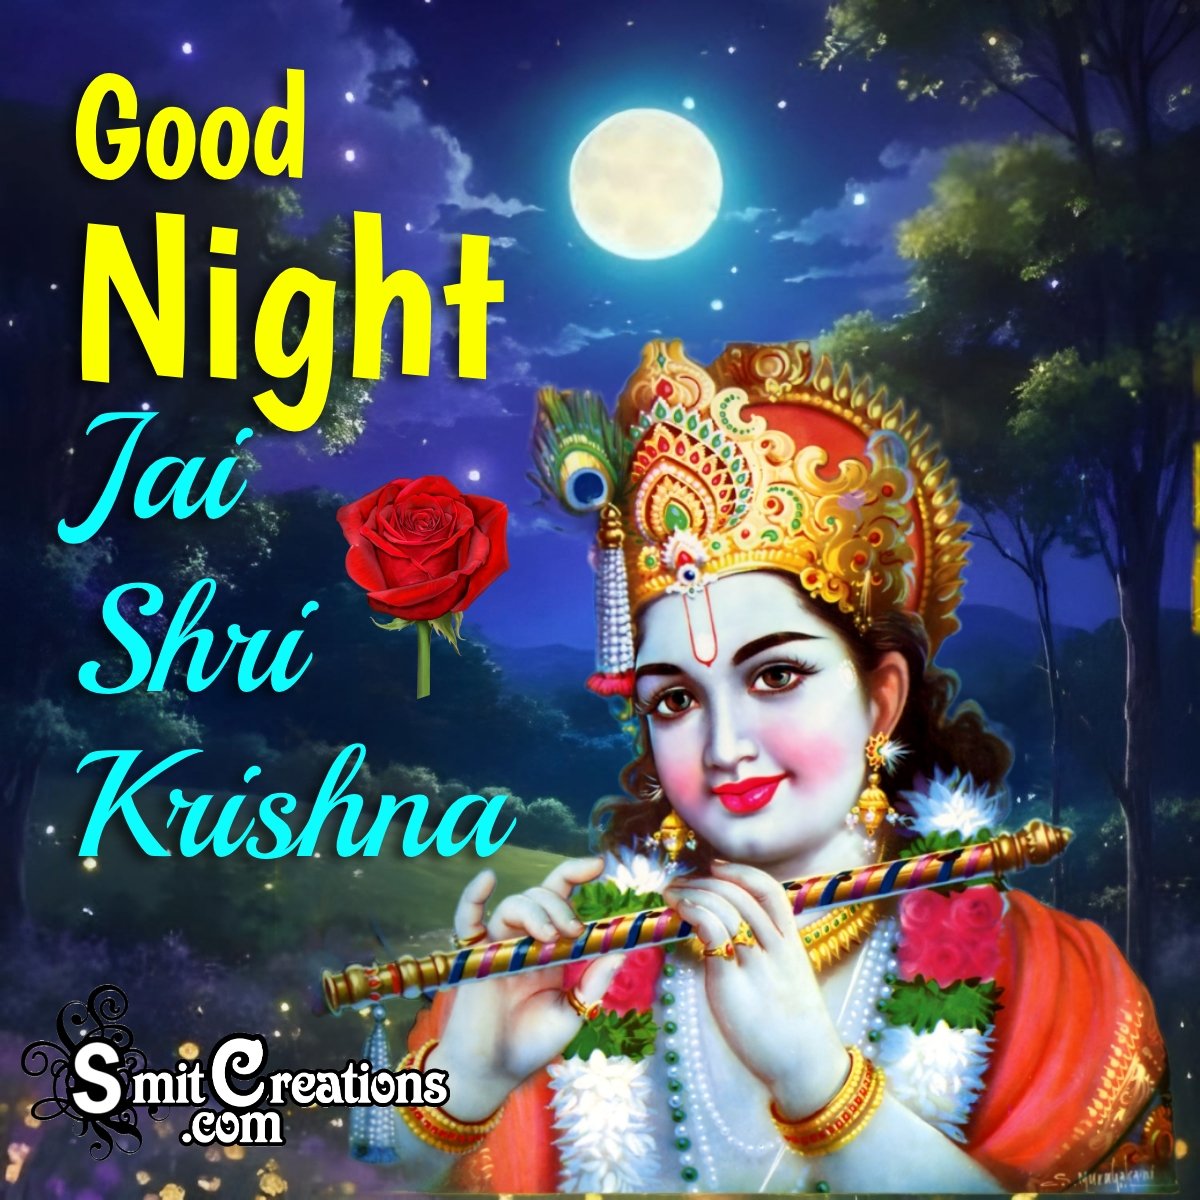 Good Night Jai Shri Krishna